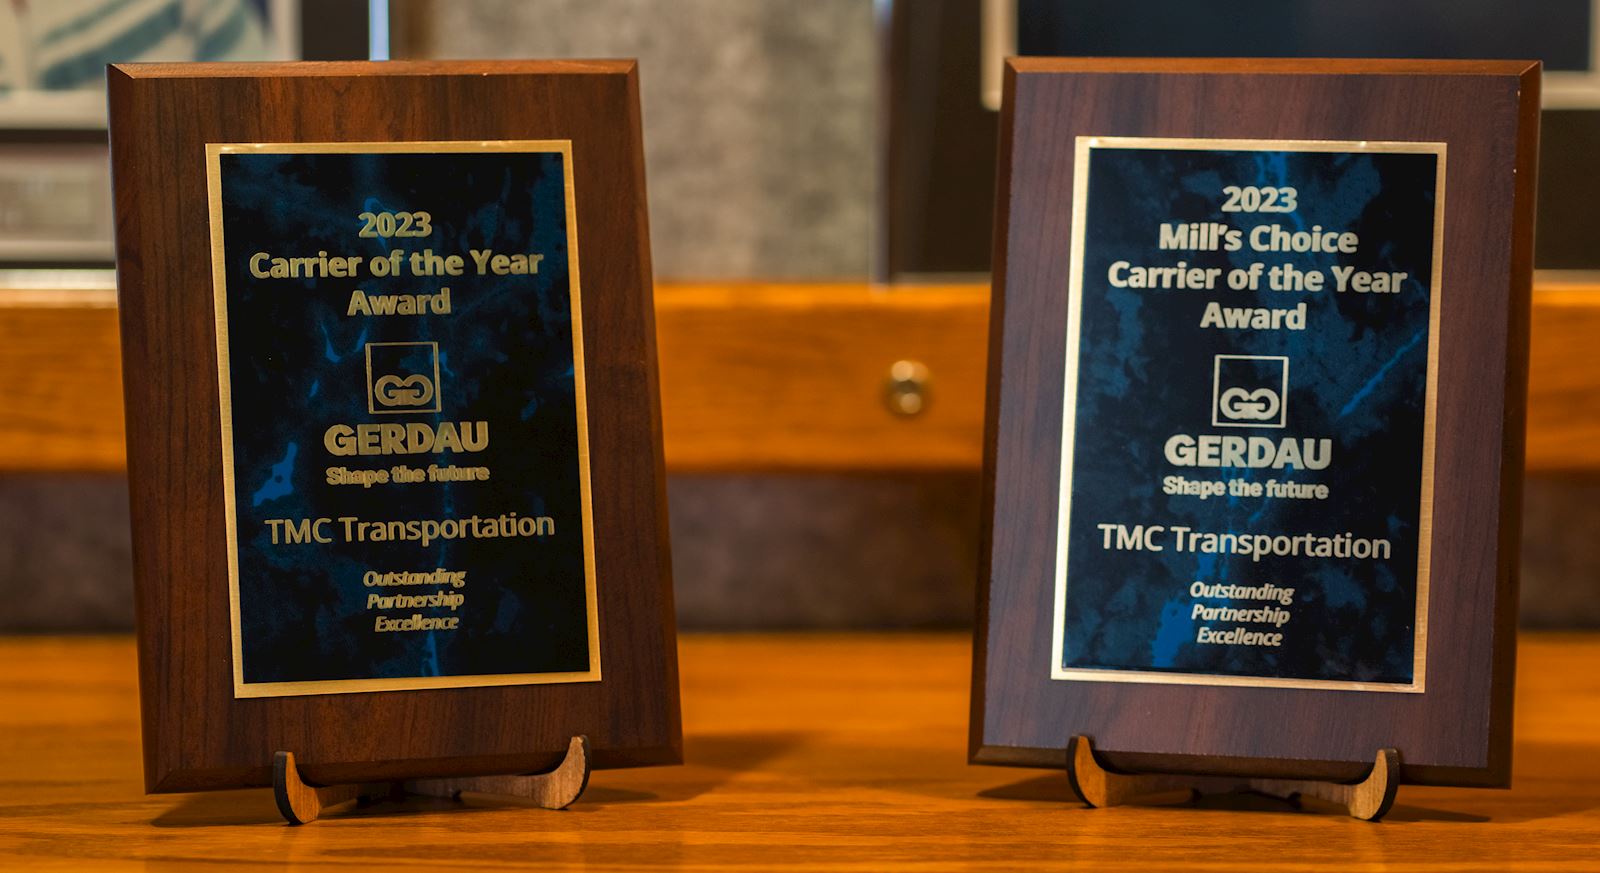 Award plaques from Gerdau